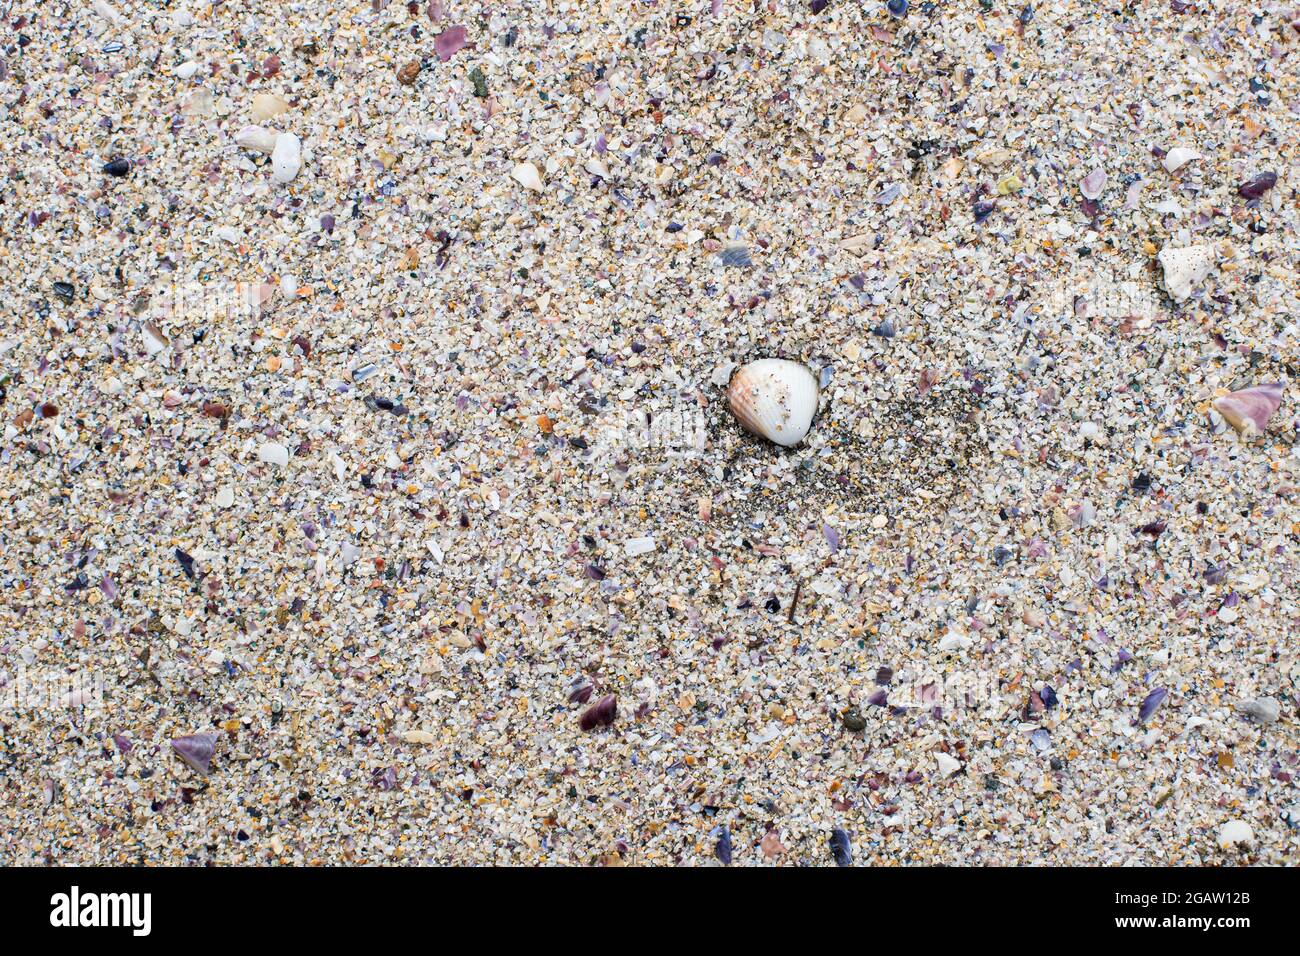 Sabbia texture spiaggia messa a fuoco in una conchiglia marina circondata da molti piccoli frammenti di conchiglia e grani di sabbia. Foto Stock